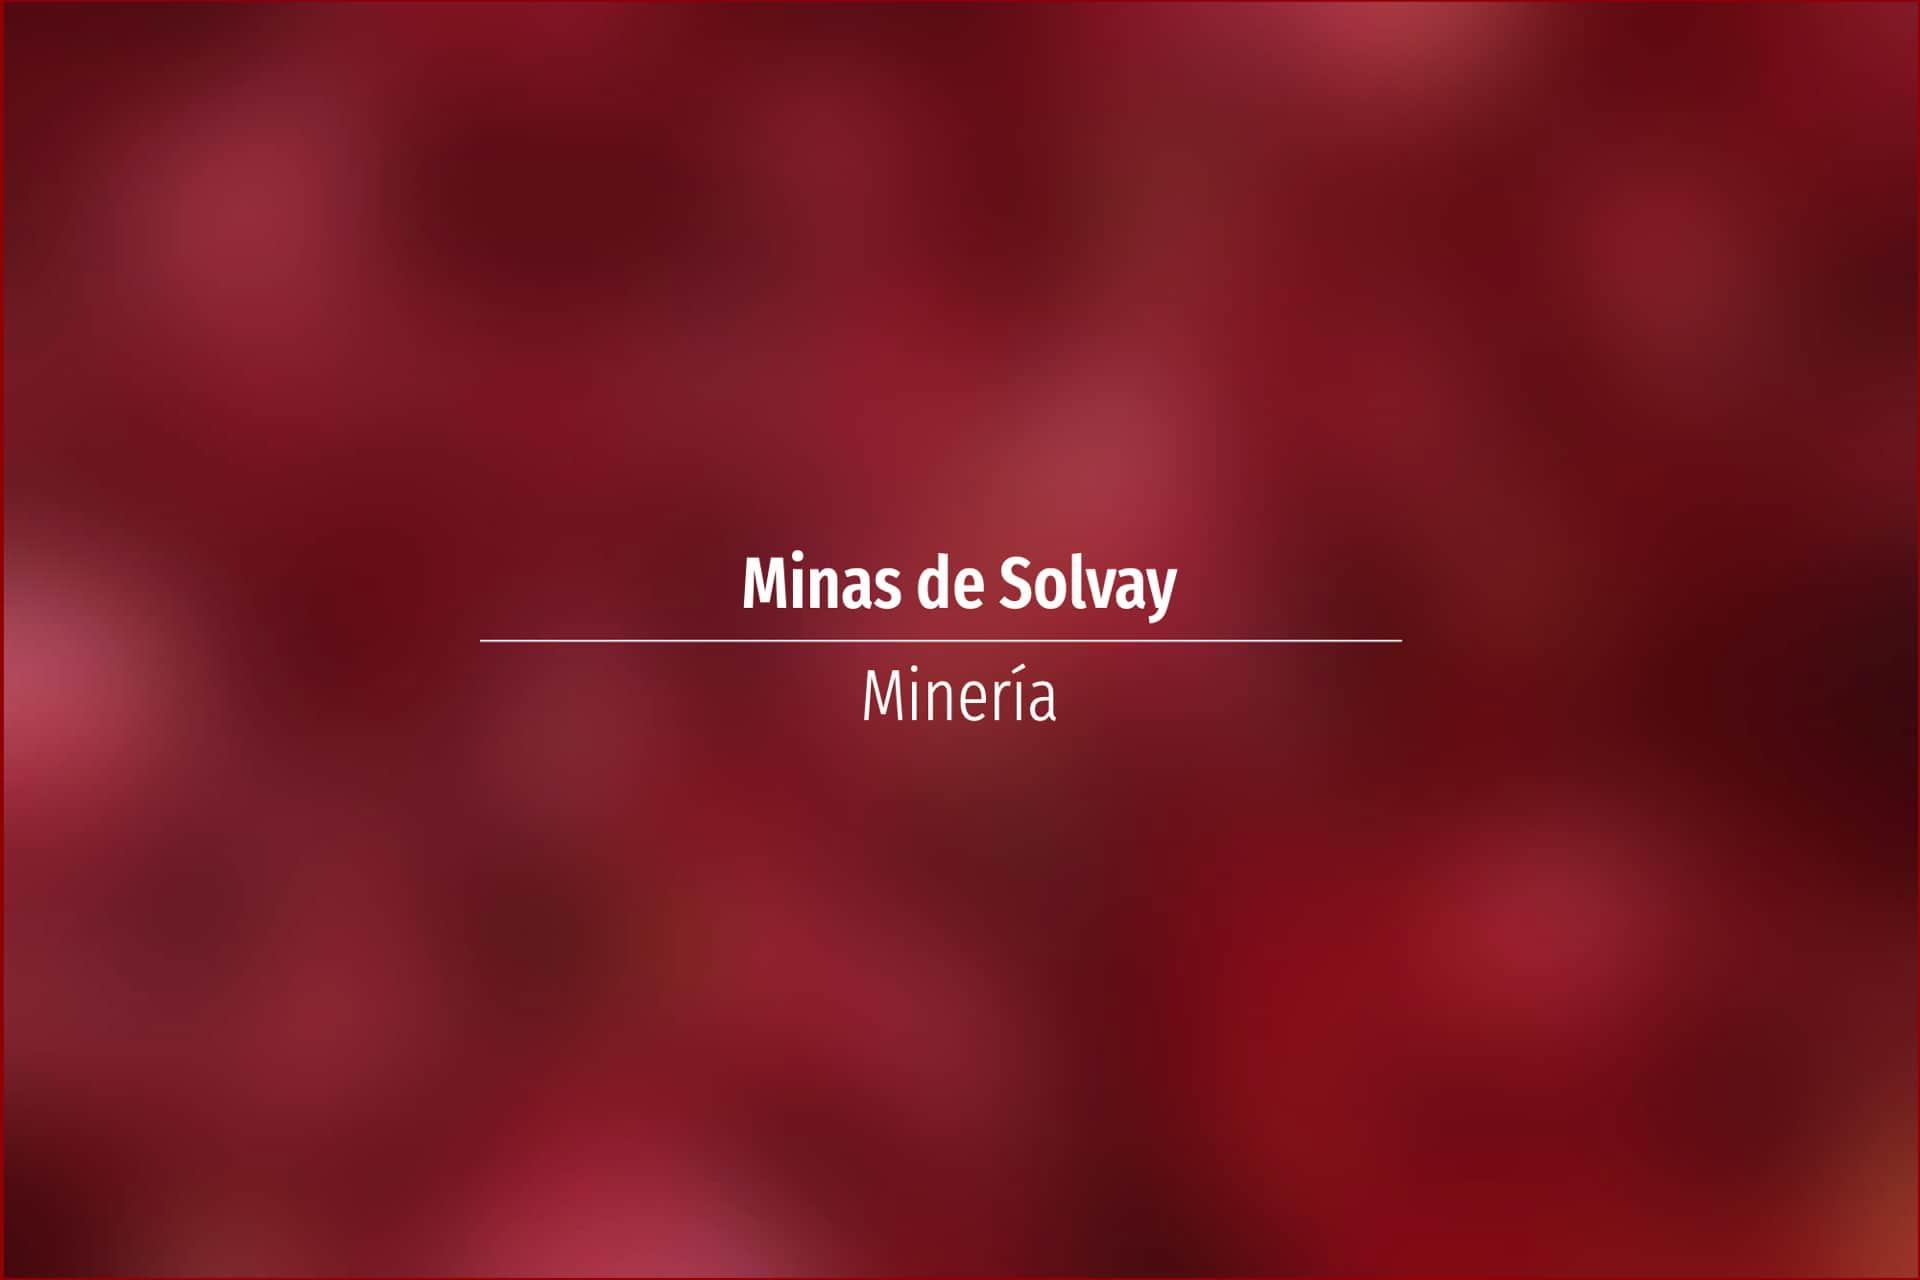 Minas de Solvay